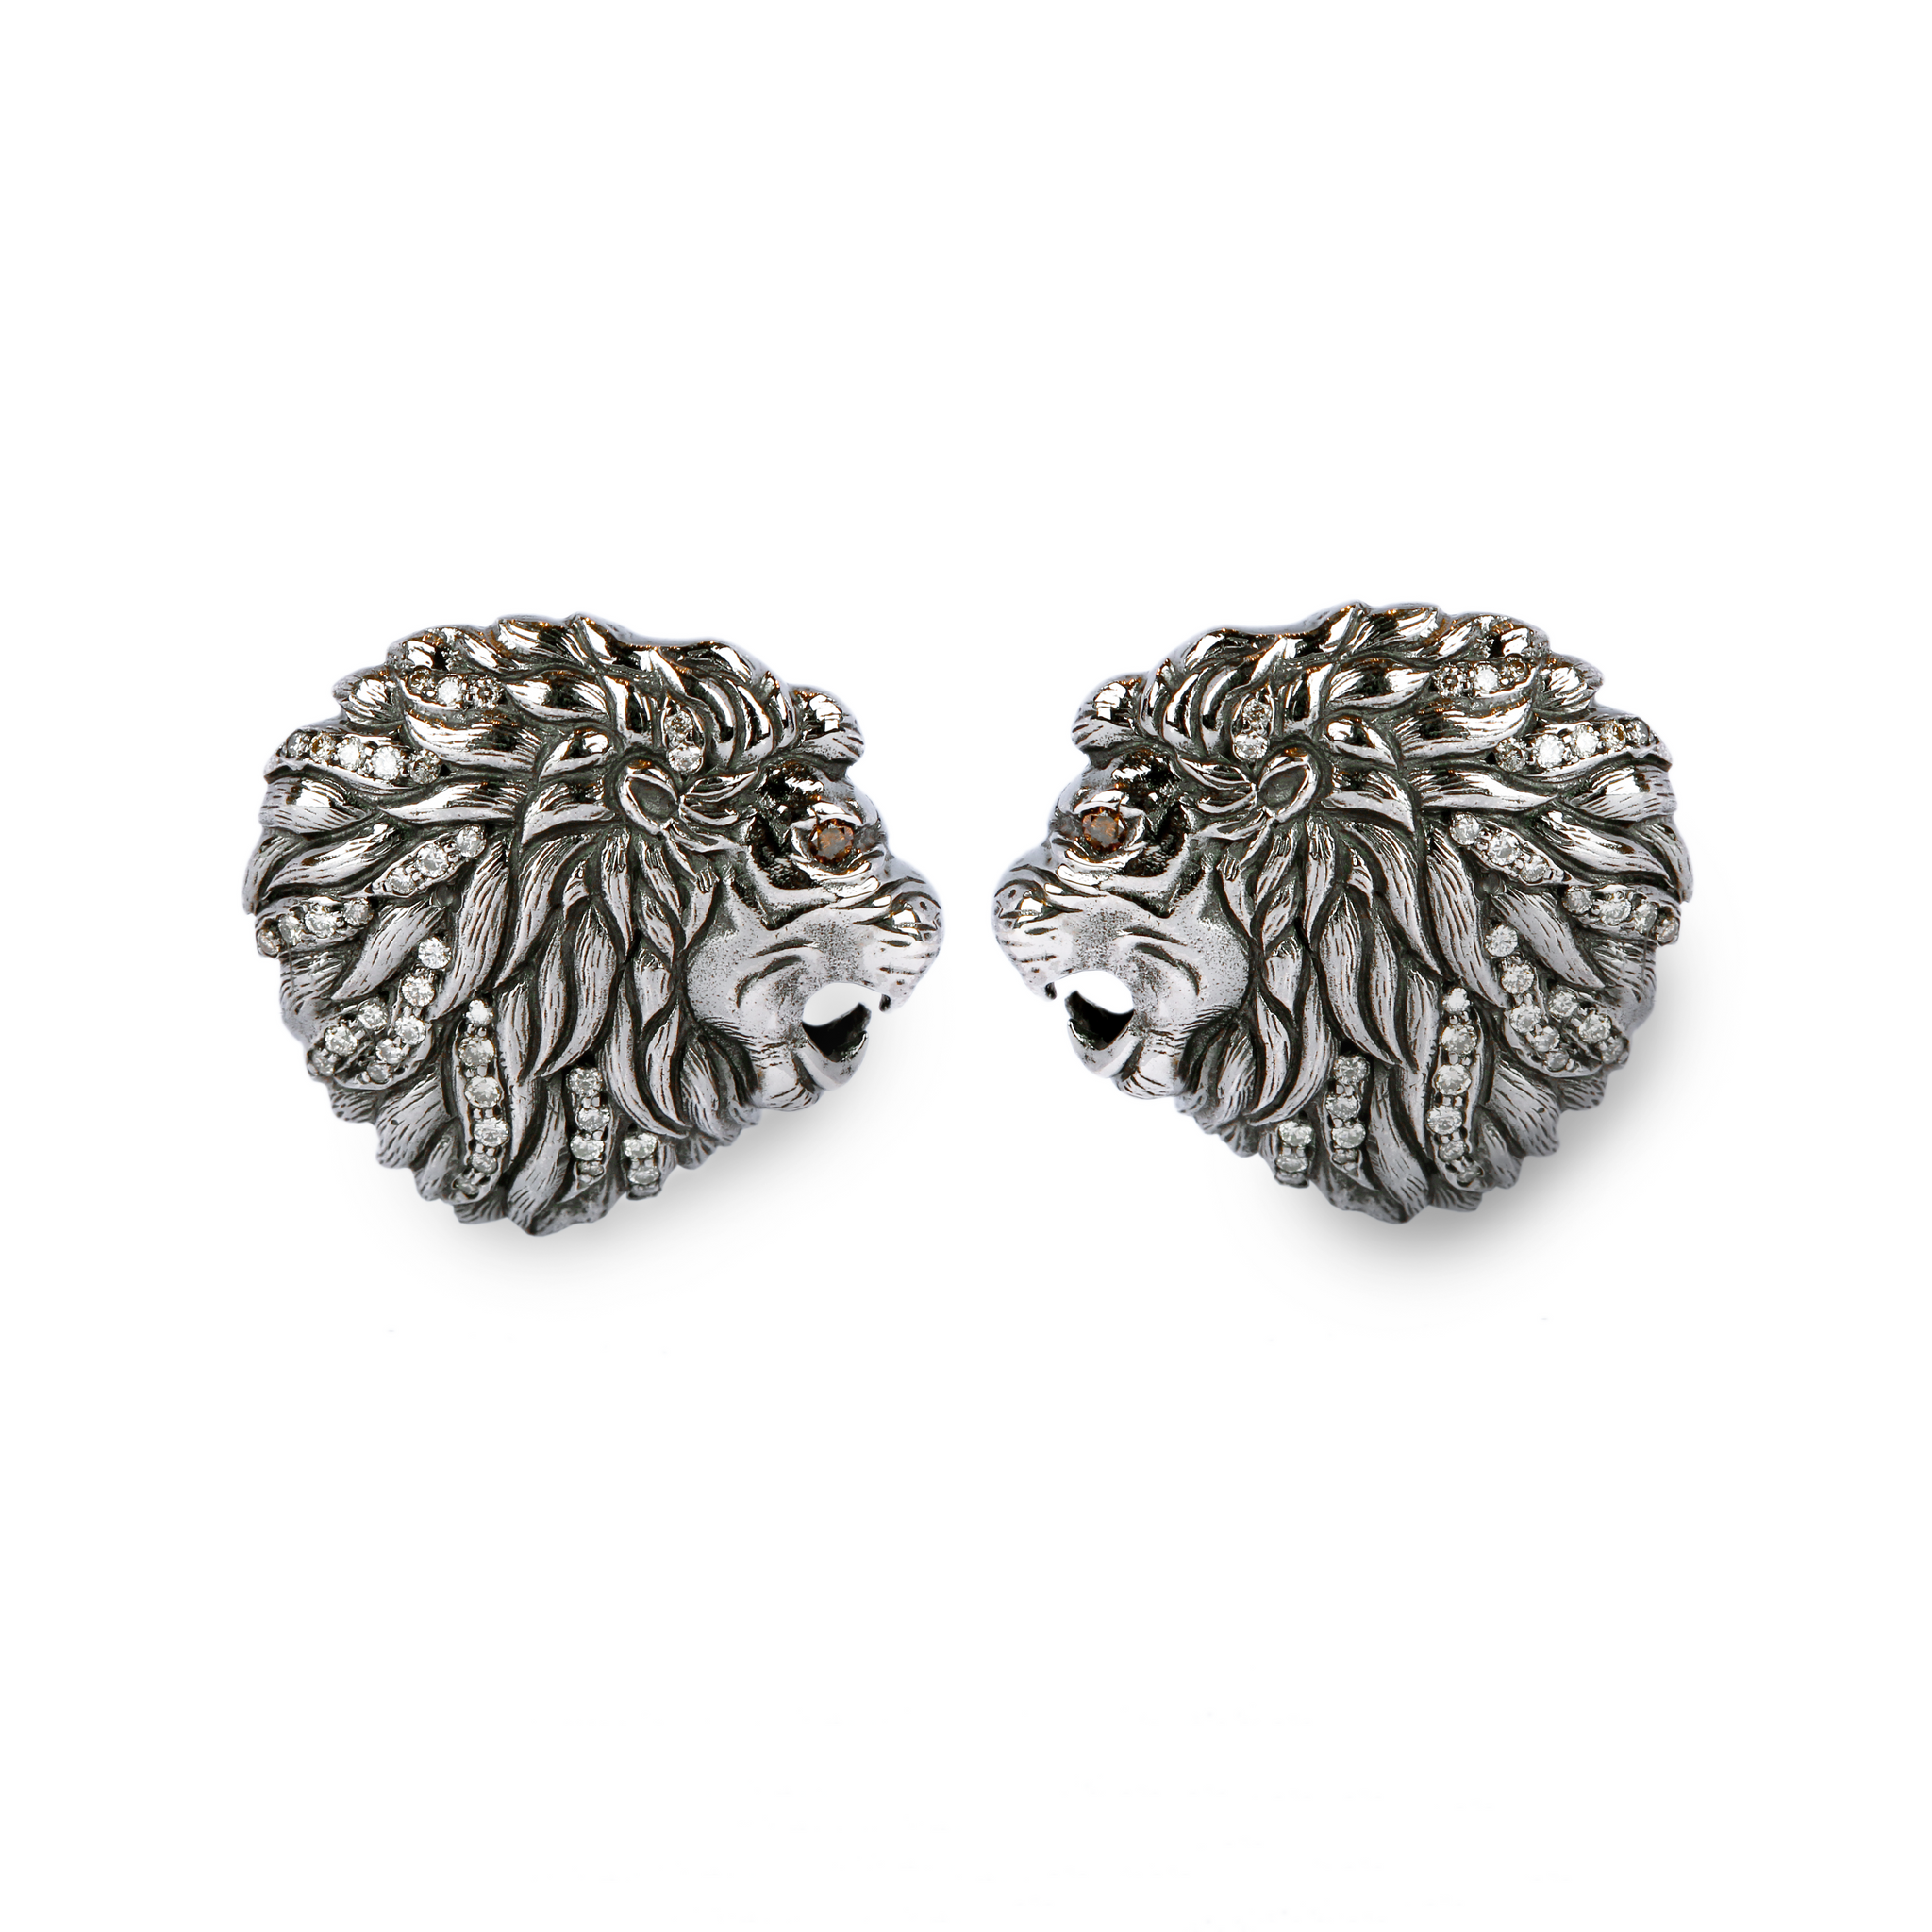 Lion Cufflinks- Online 925 Sterling Silver Jewellery